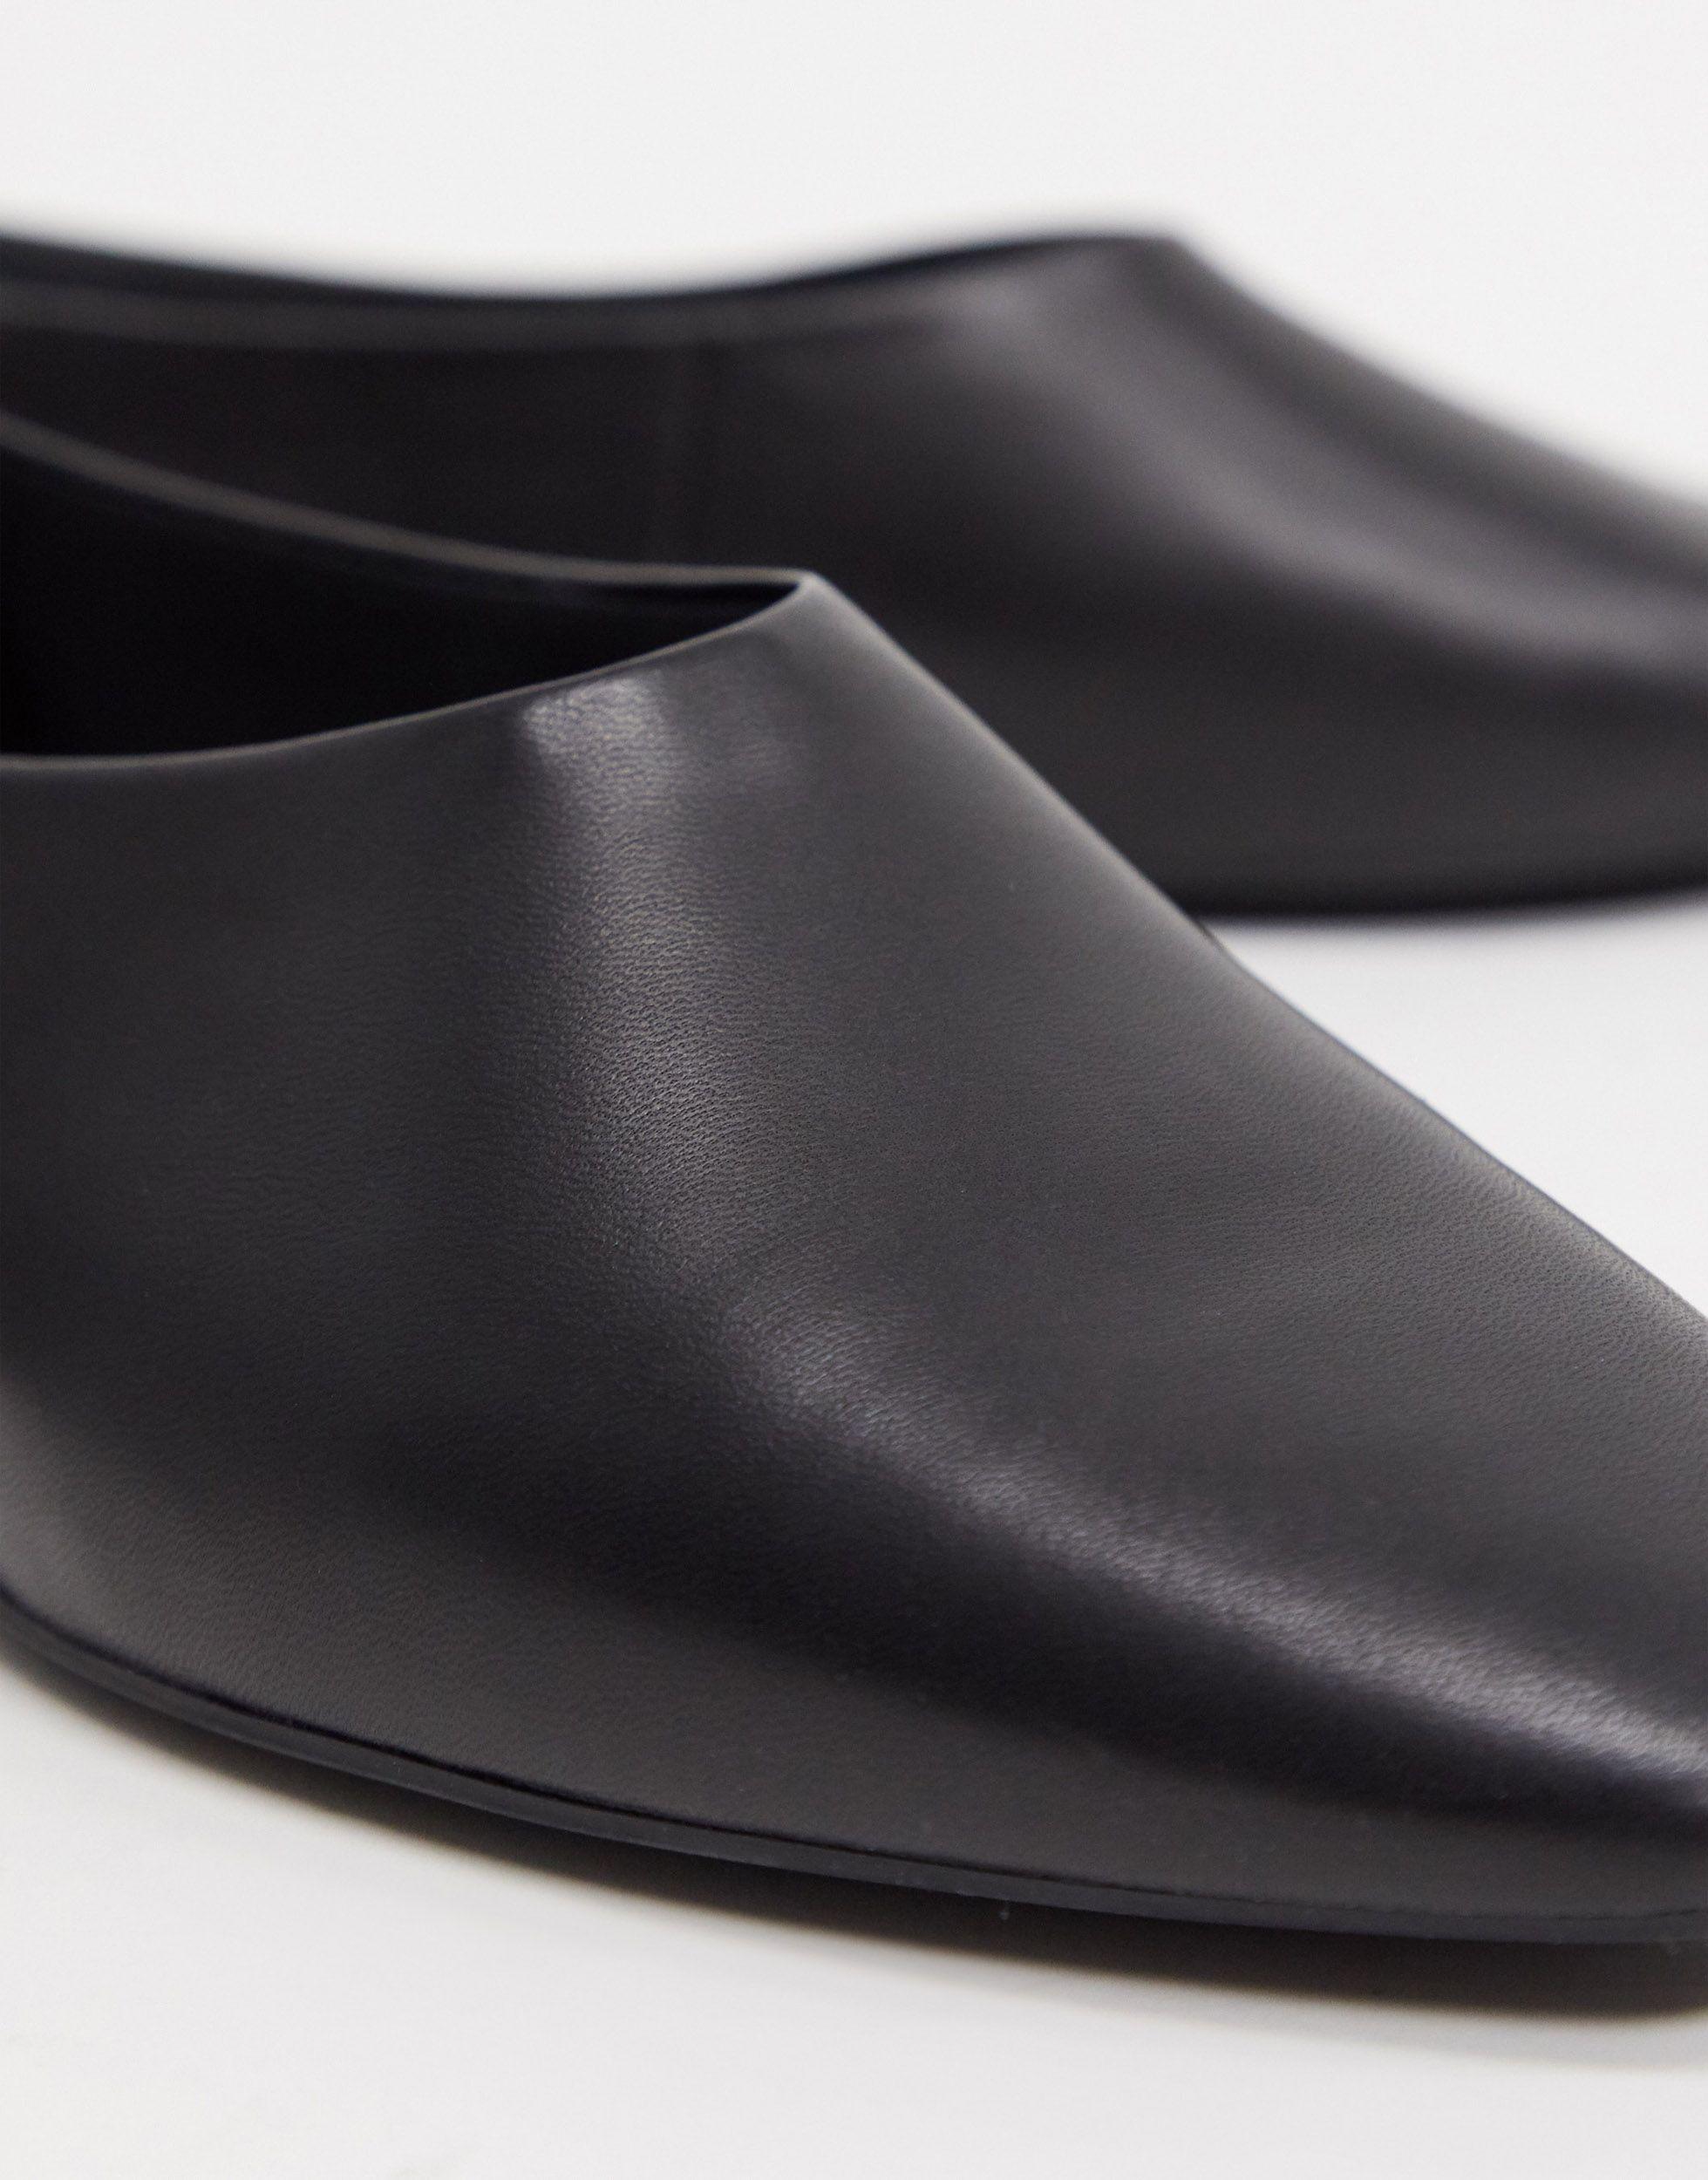 Gom Verwachten Vleien Vagabond Shoemakers Celia Soft Leather Ballet Flats in Black | Lyst